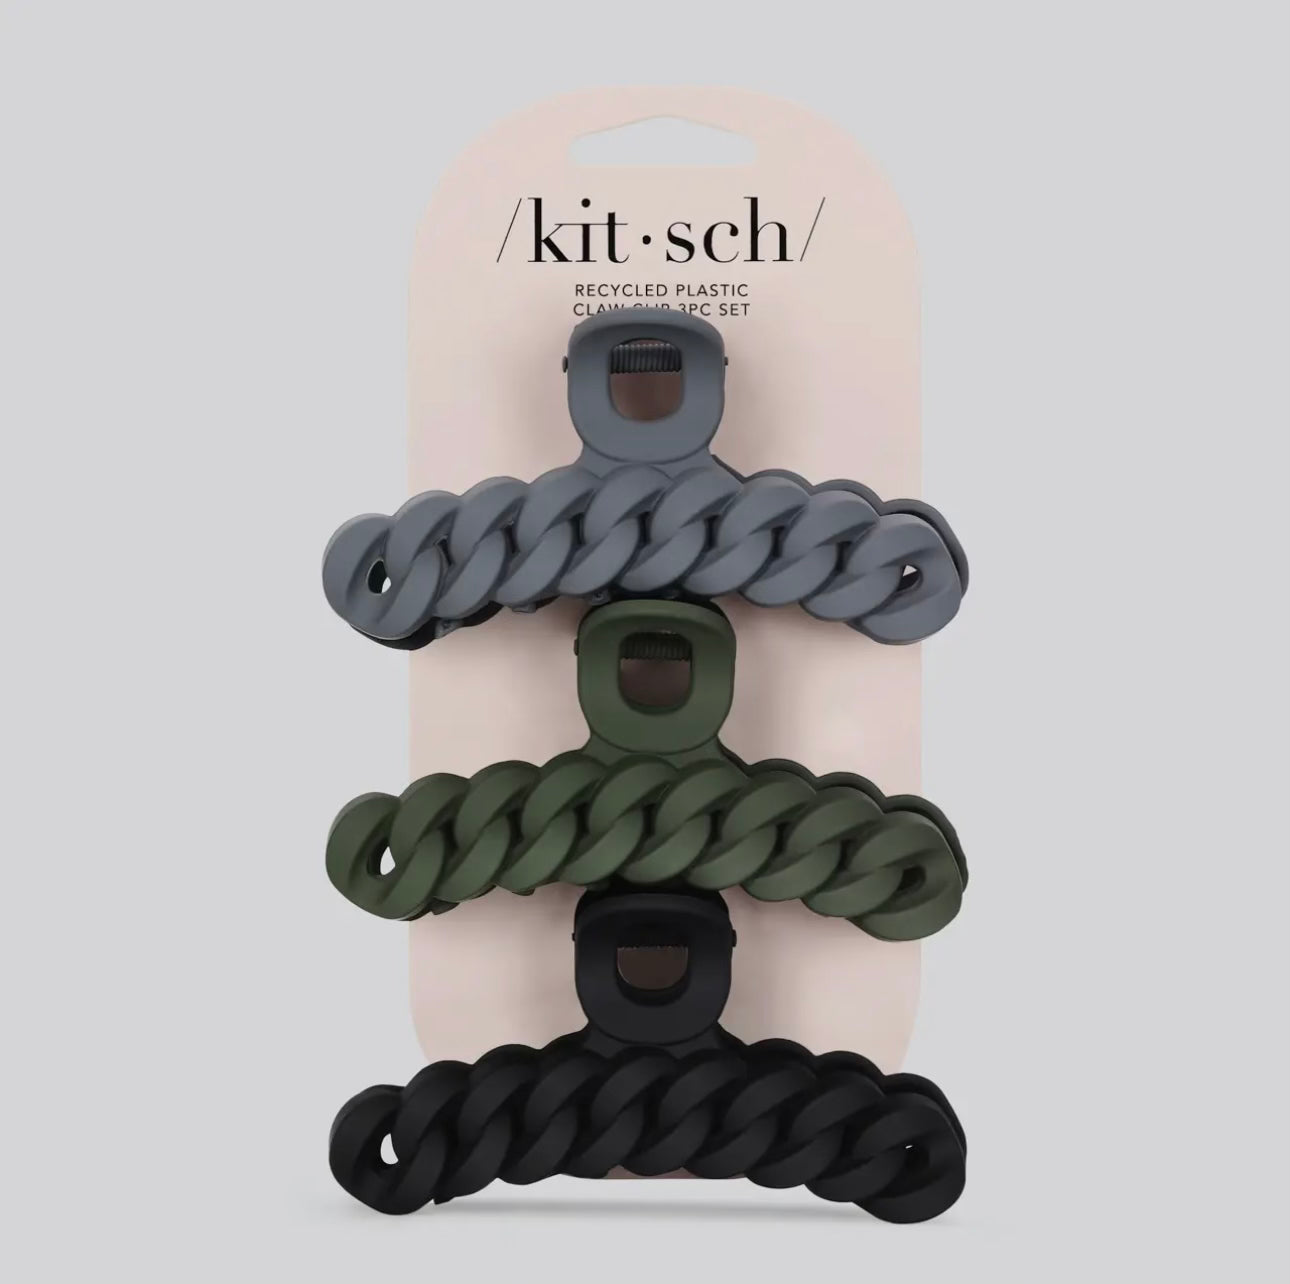 Kitsch Chain Claw Clip 3 Piece Set- Black/Moss